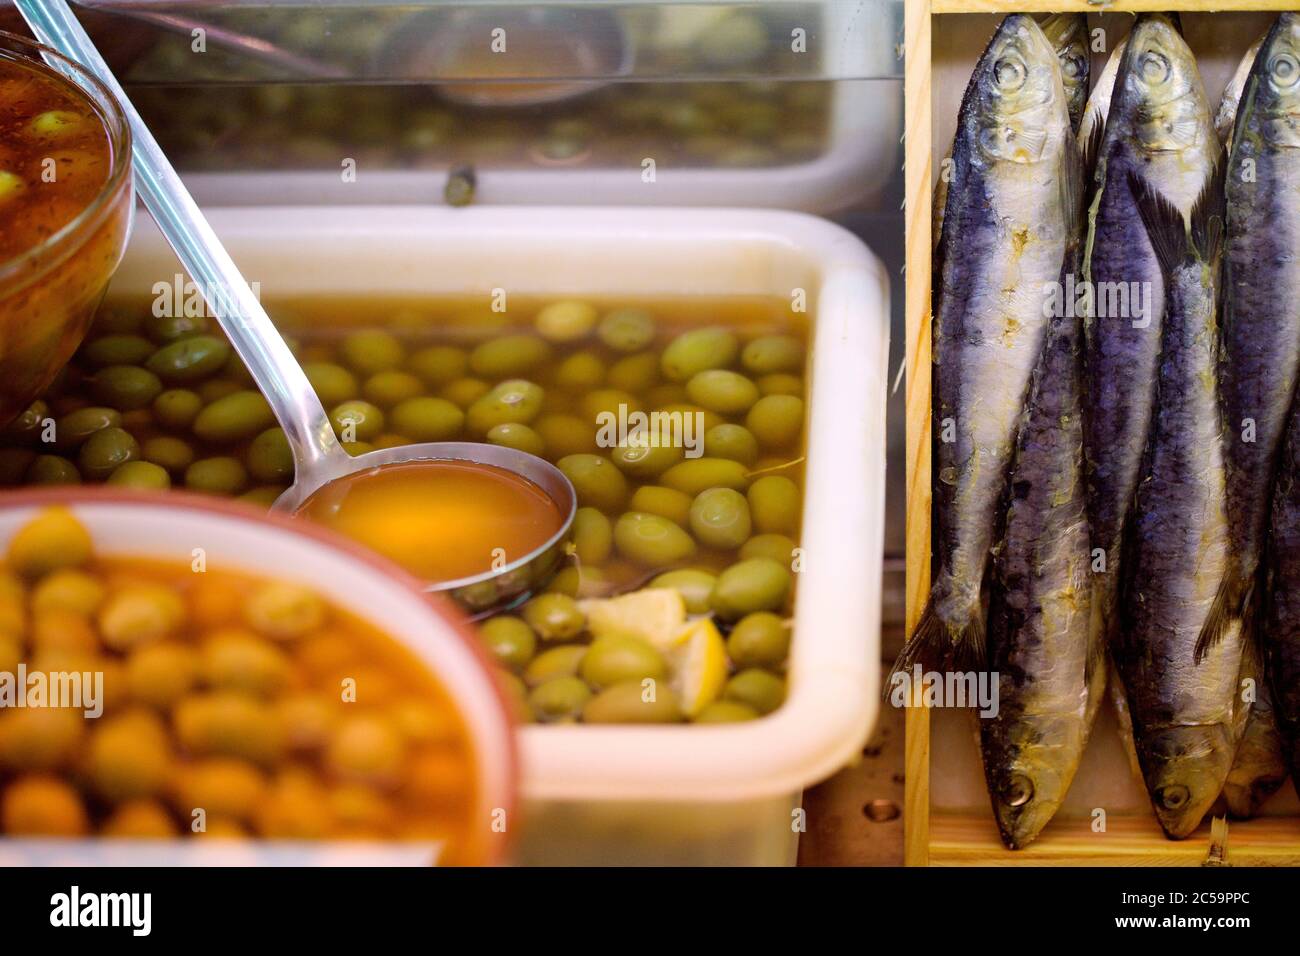 Spain, Valencia, gastronomy Stock Photo